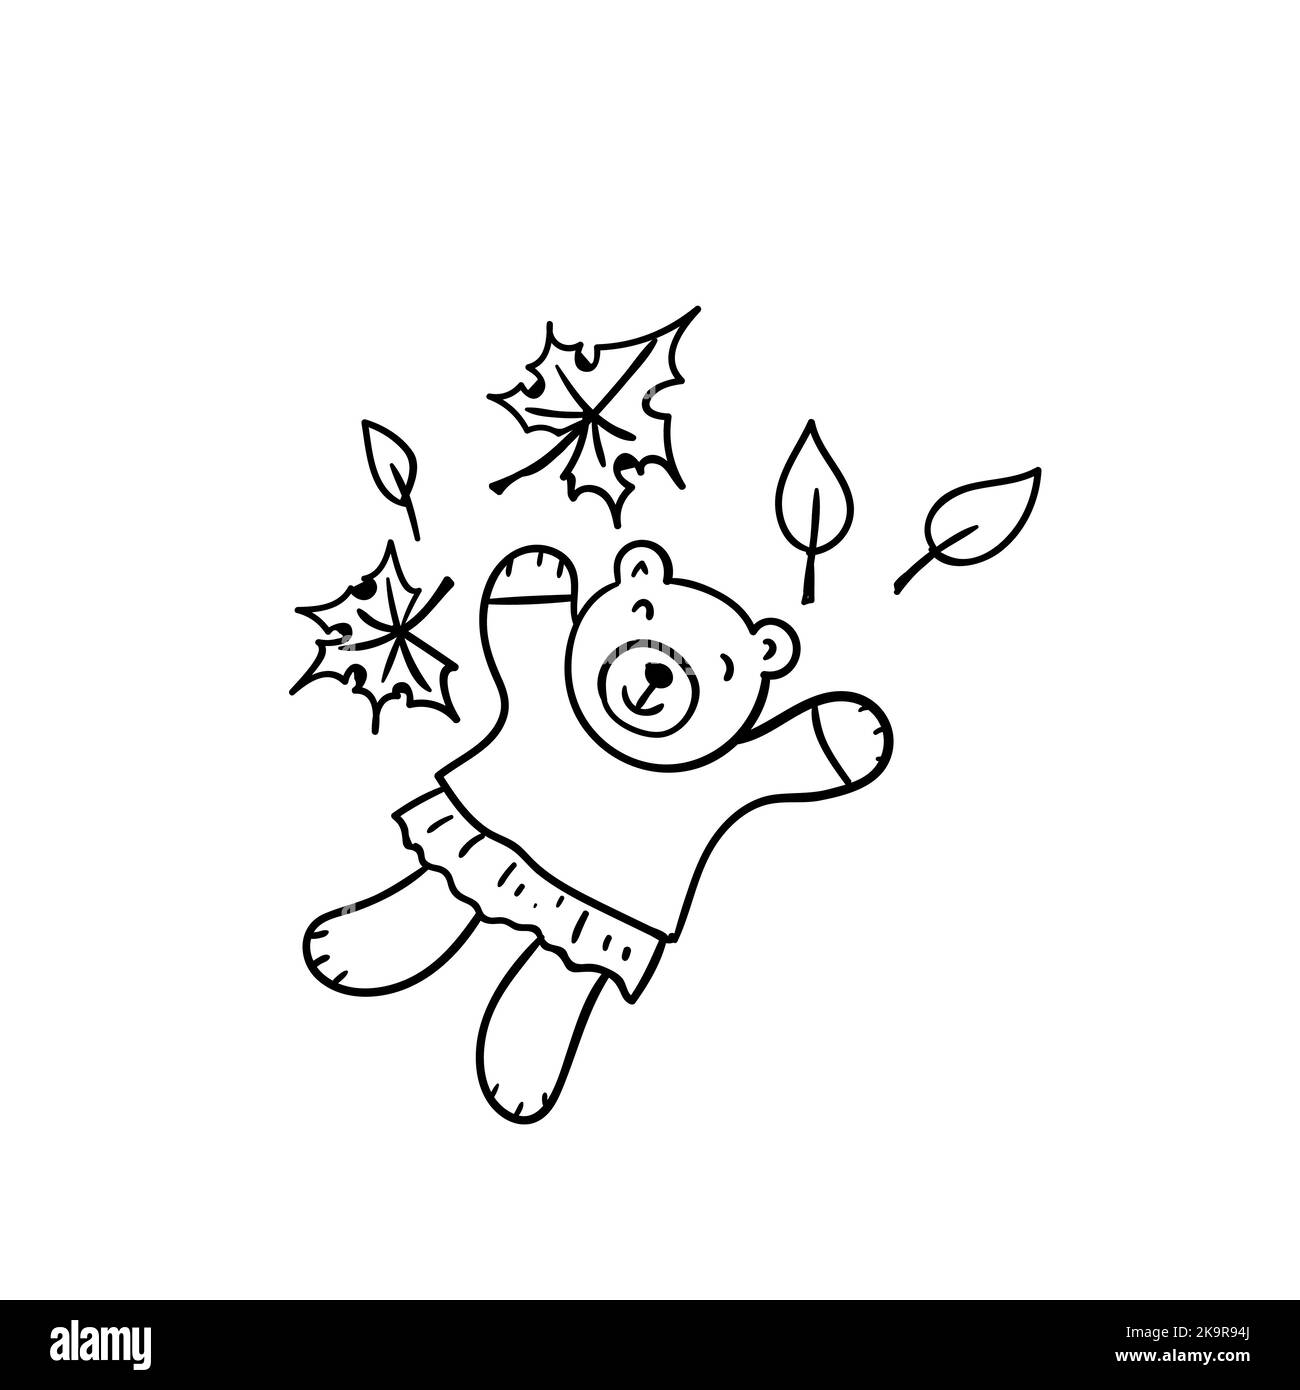 Handgezeichnet skizzierte Illustration des Zeichentrickbären, der in Herbstblättern liegt. Lustiges Tier. Stock Vektor